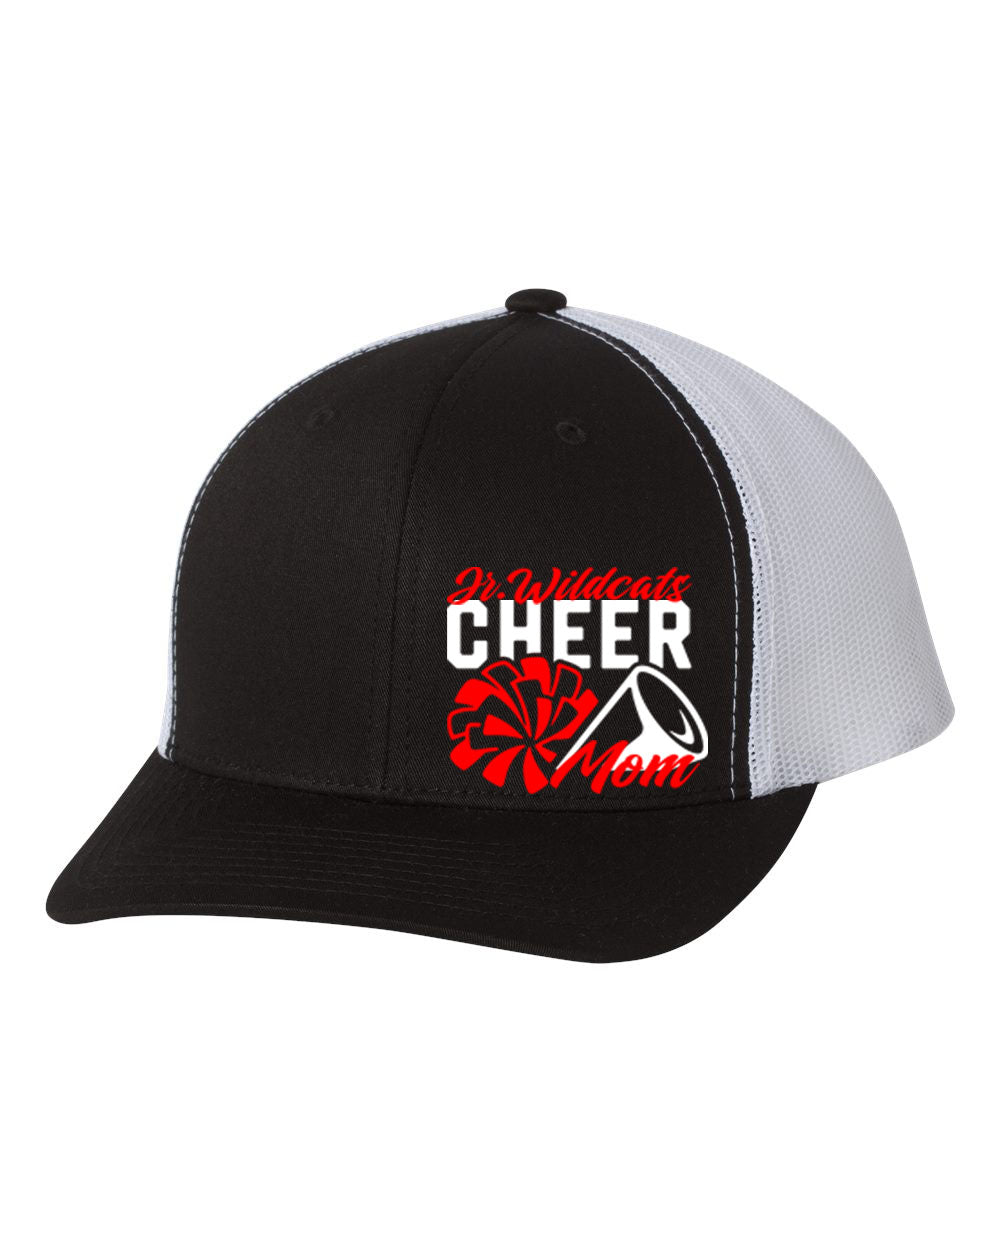 High Point Cheer Design 4 Trucker Hat